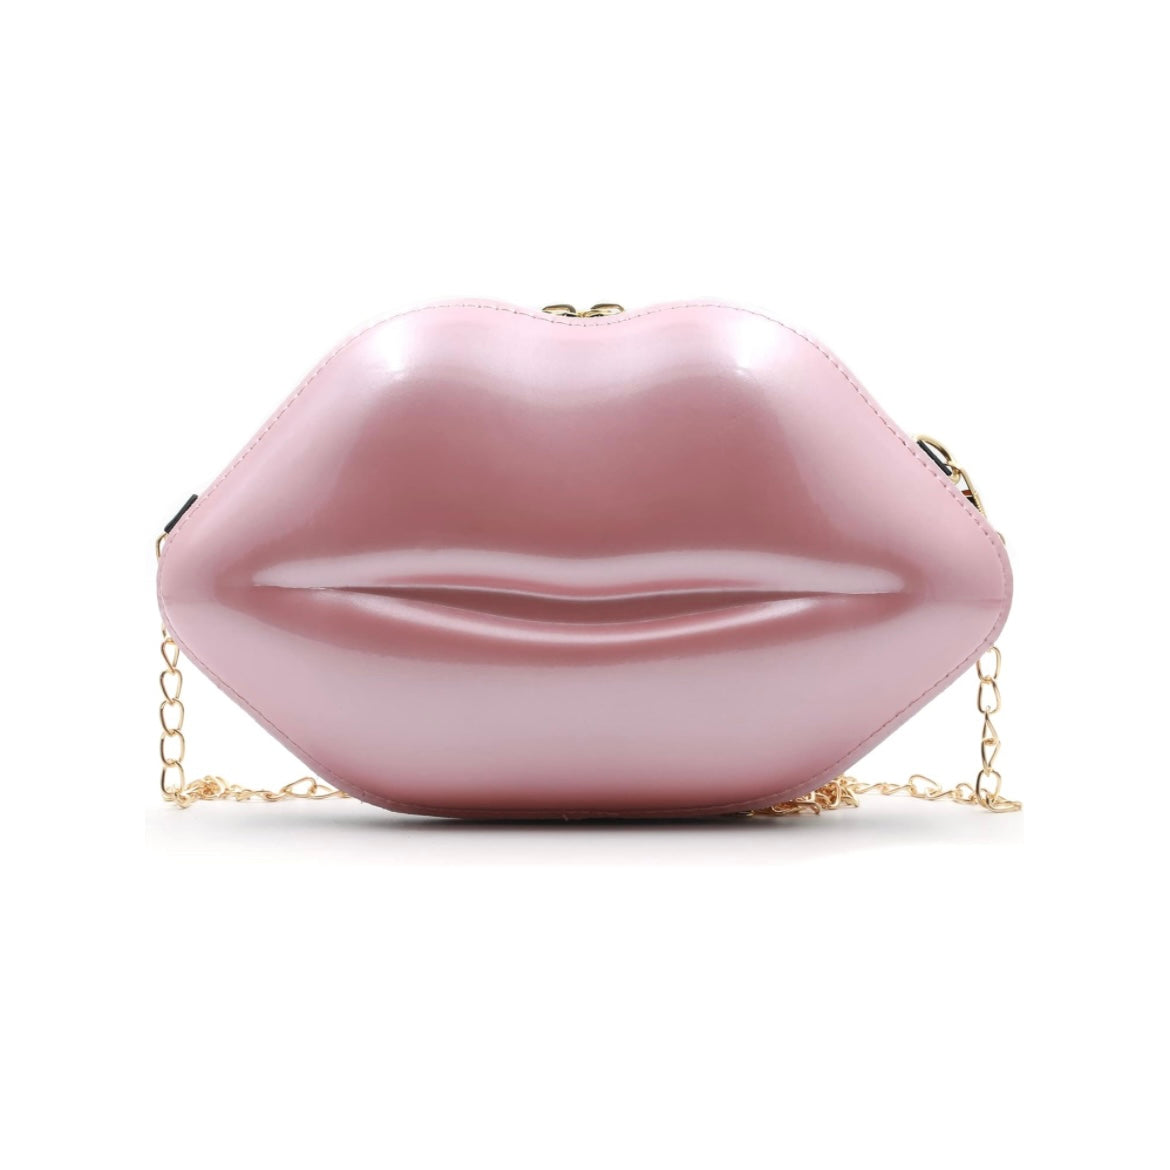 Elegant Lip 💋 Handbag, Evening Bag w/Adjustable Gold Chain shoulder Strap, comes in Several Colors, picture shows Blush champagne color lip handbag displayed 